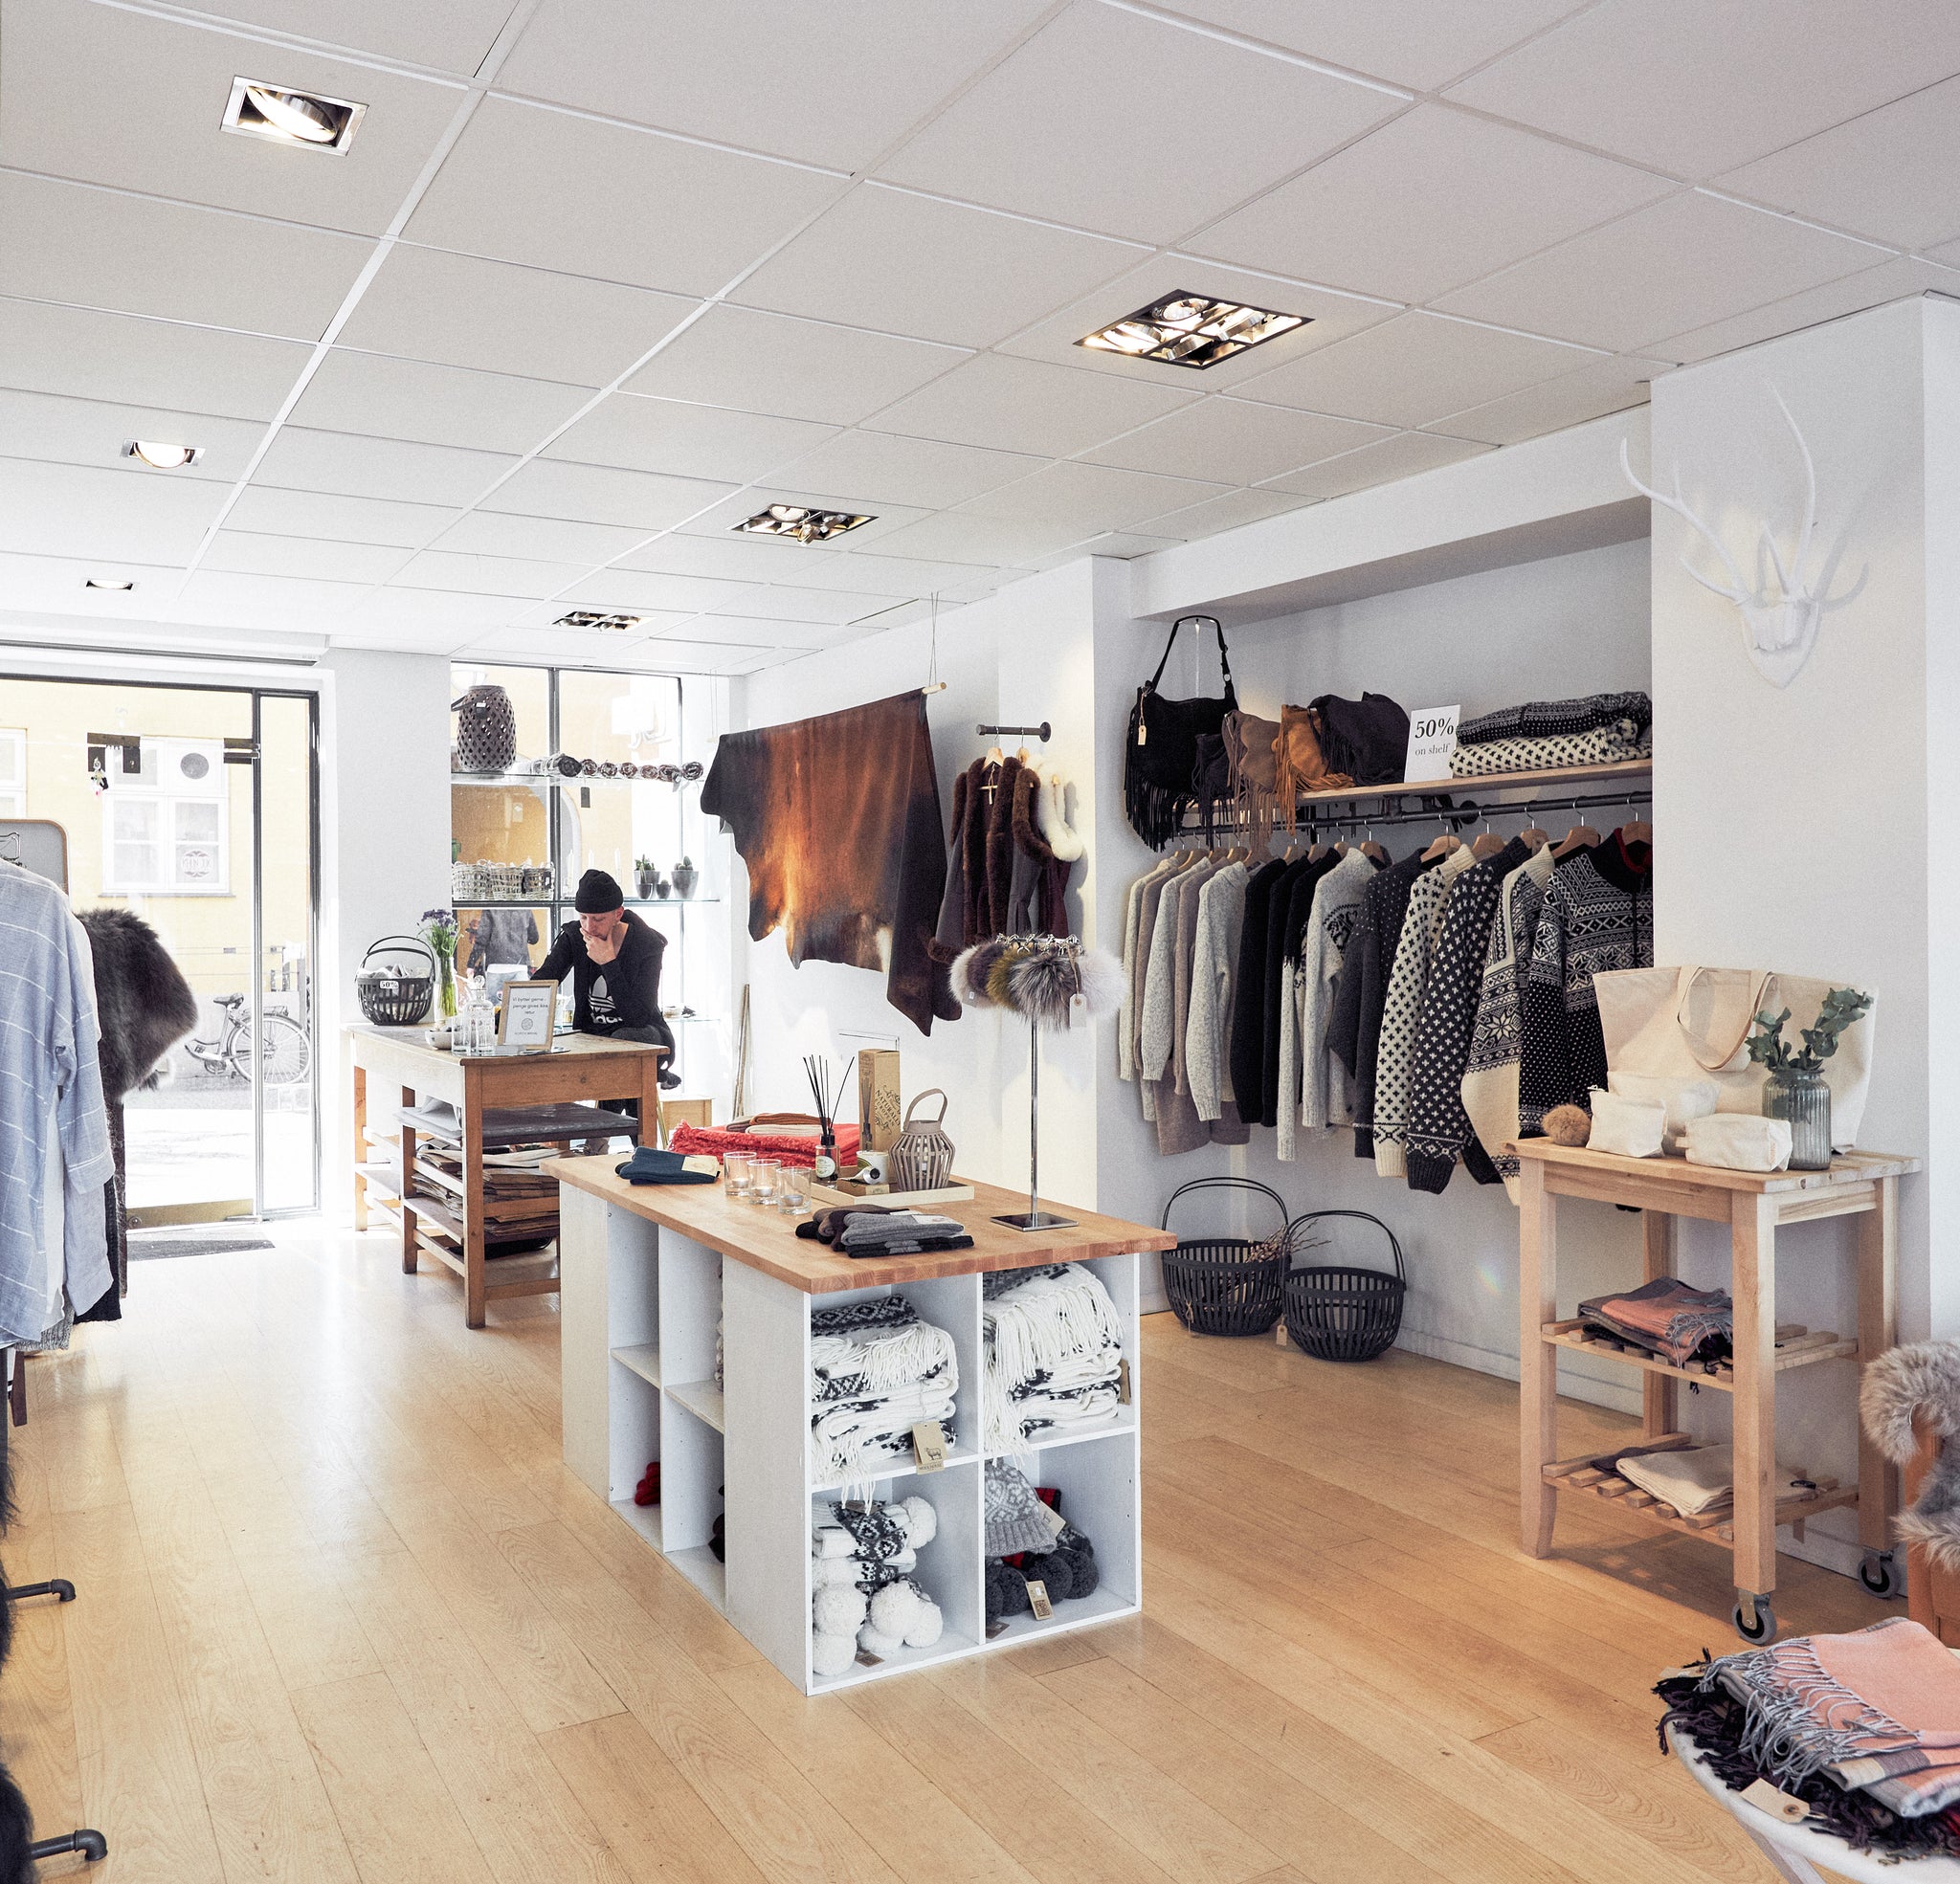 Nordic wool butik i københavn - indretning med rackbuddy tøjstativer og hylder